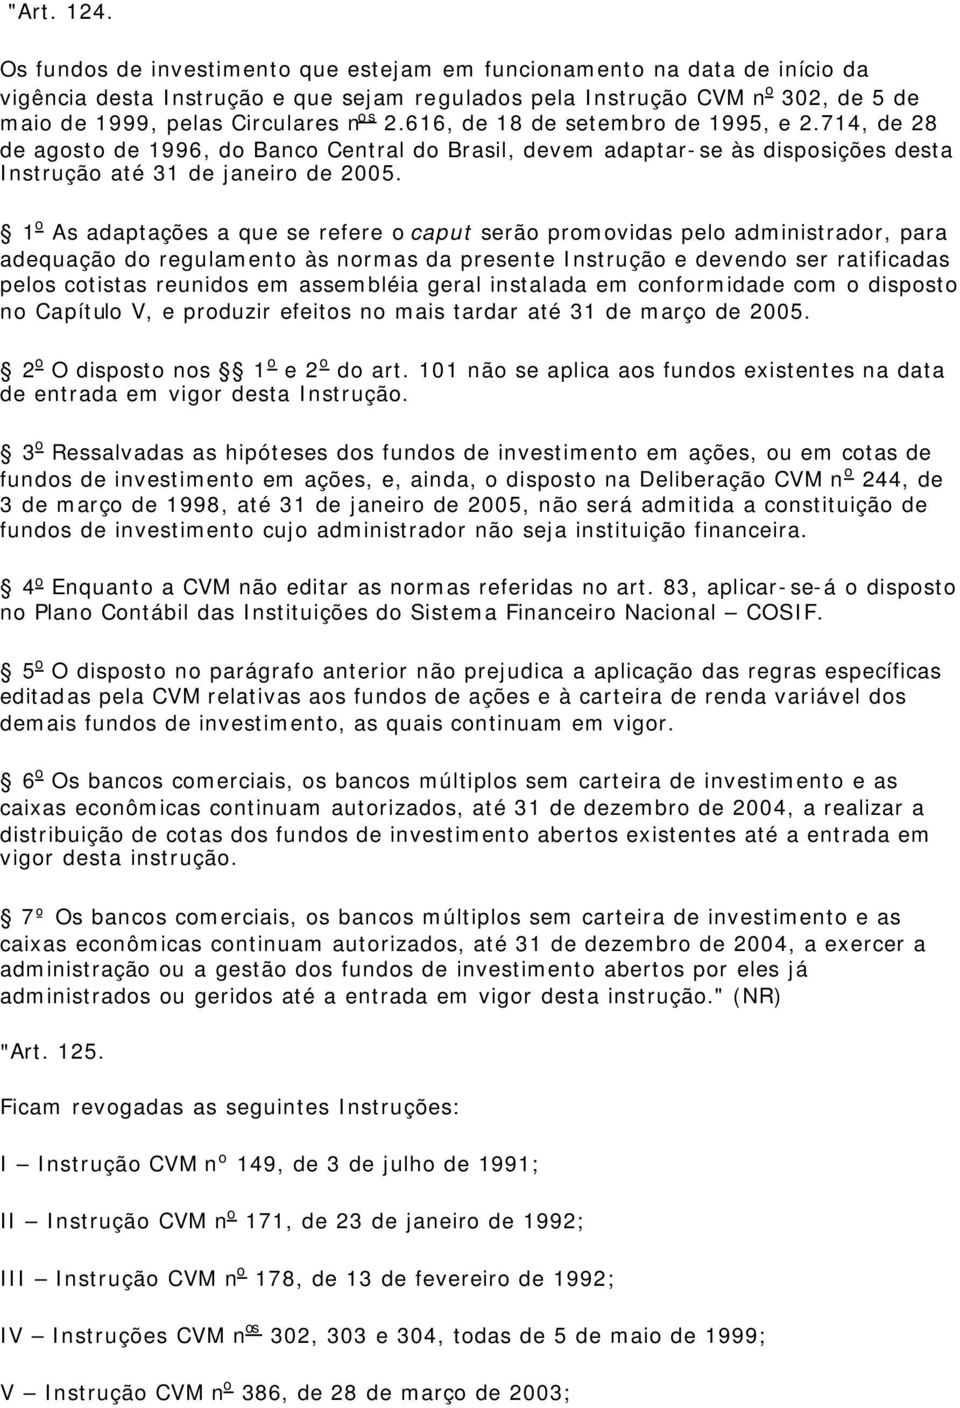 616, de 18 de setembro de 1995, e 2.714, de 28 de agosto de 1996, do Banco Central do Brasil, devem adaptar-se às disposições desta Instrução até 31 de janeiro de 2005.